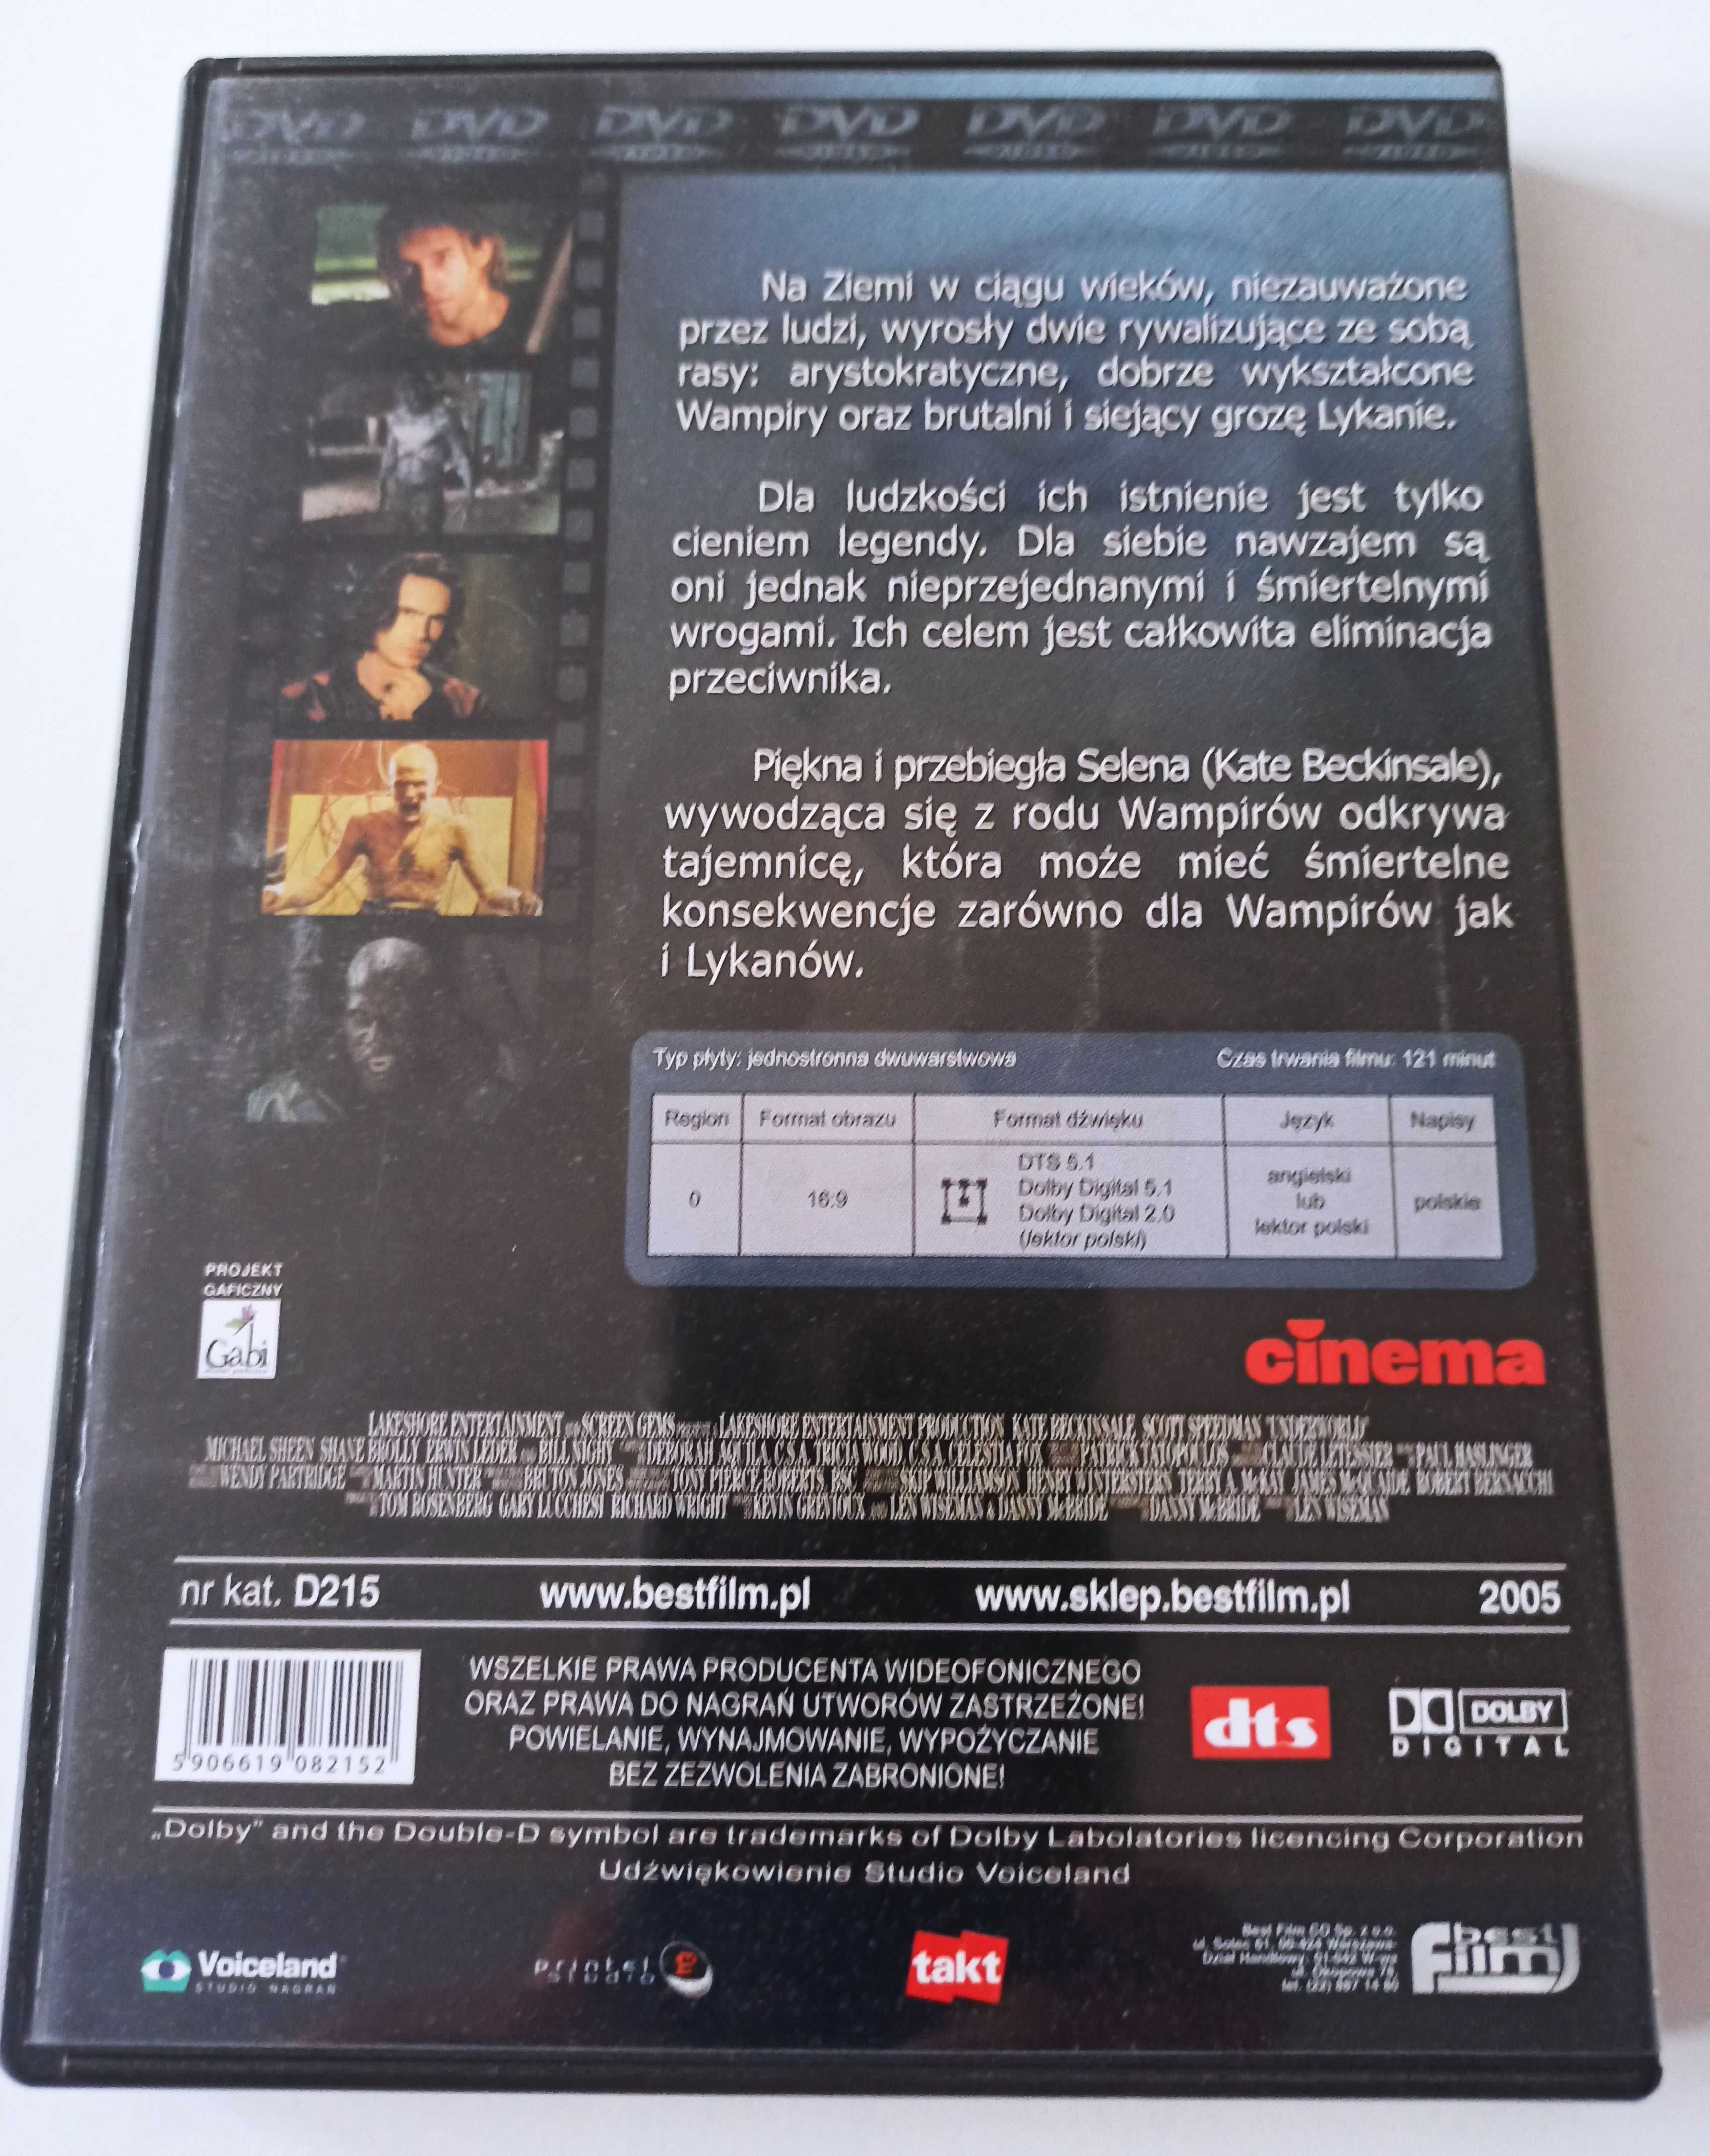 Underworld Po której jesteś stronie? – horror film płyta DVD